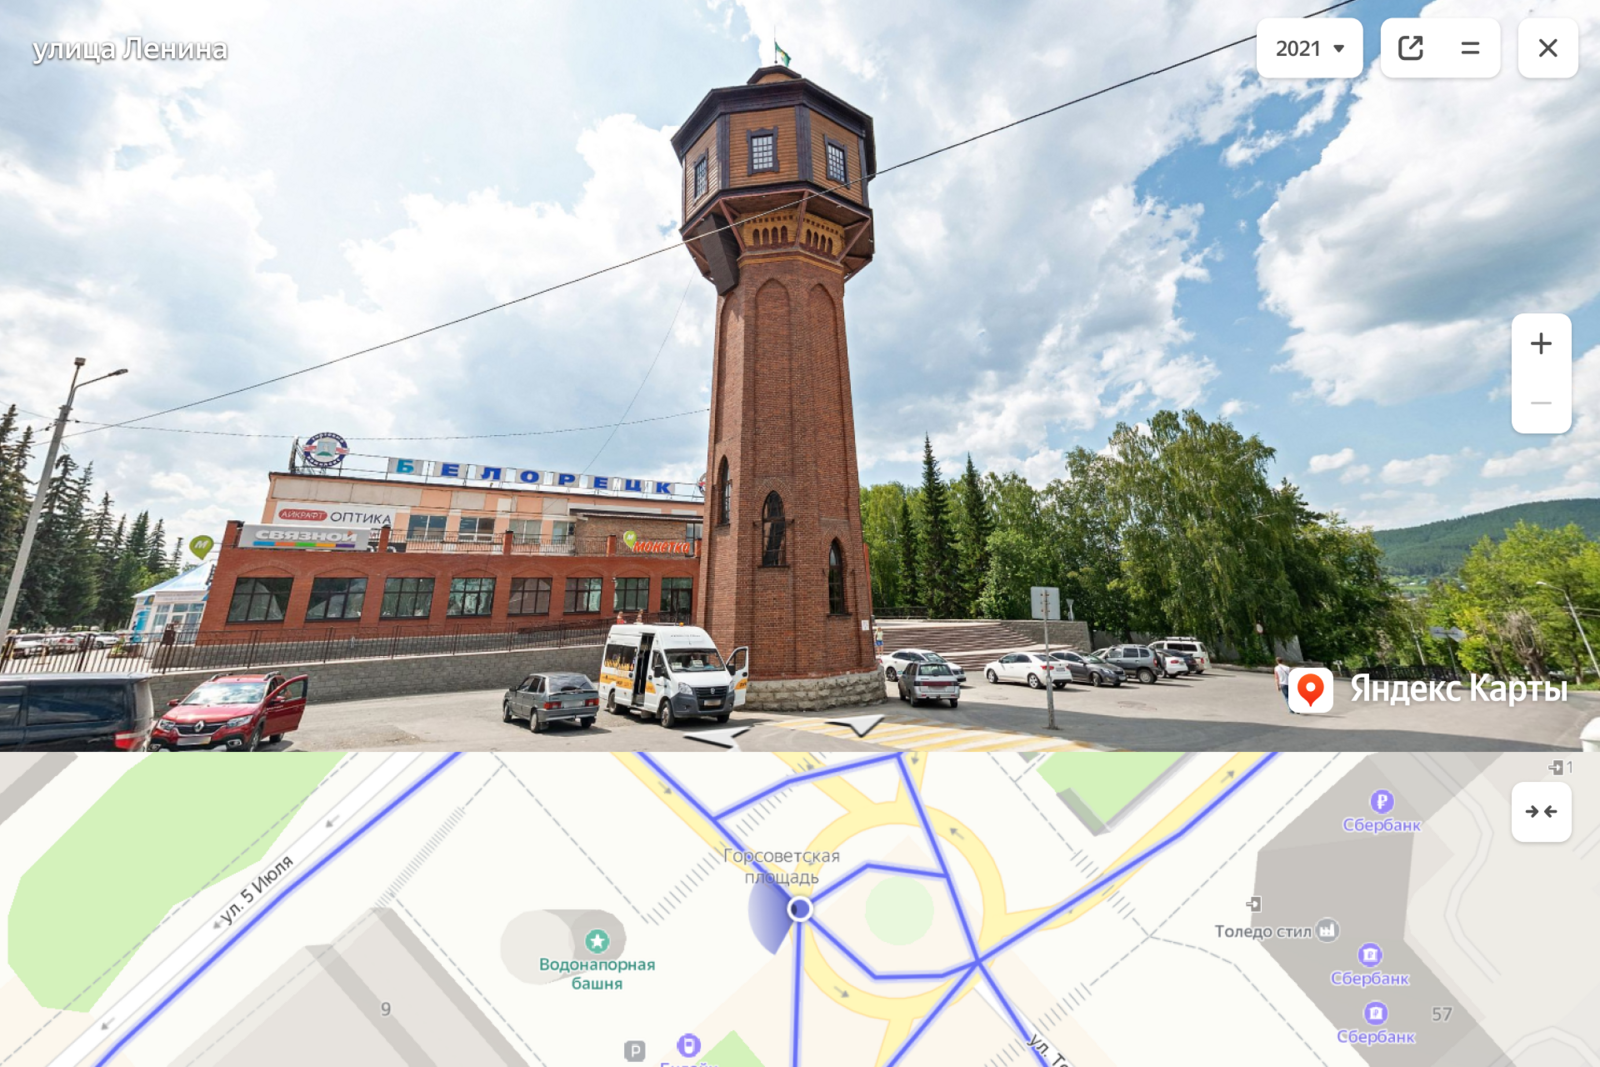 Панорамы пяти городов Башкирии впервые появились в Яндекс.Картах